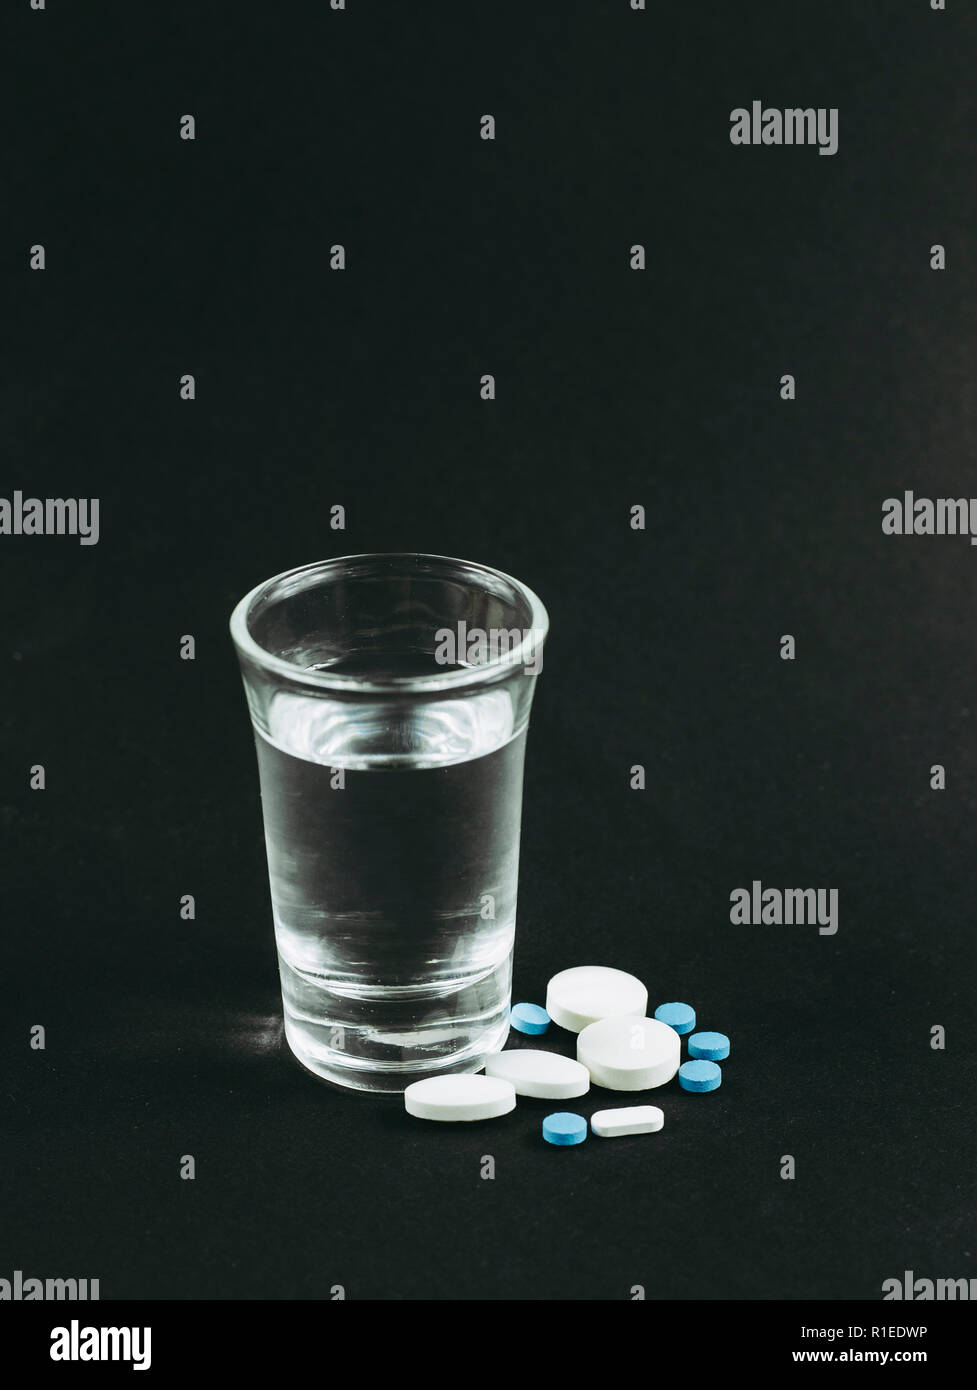 La miscelazione di alcool con farmaci pillole è cattivo concetto pericolose. Un bicchiere di vodka con compresse pillole di farmaci su sfondo nero. Foto Stock